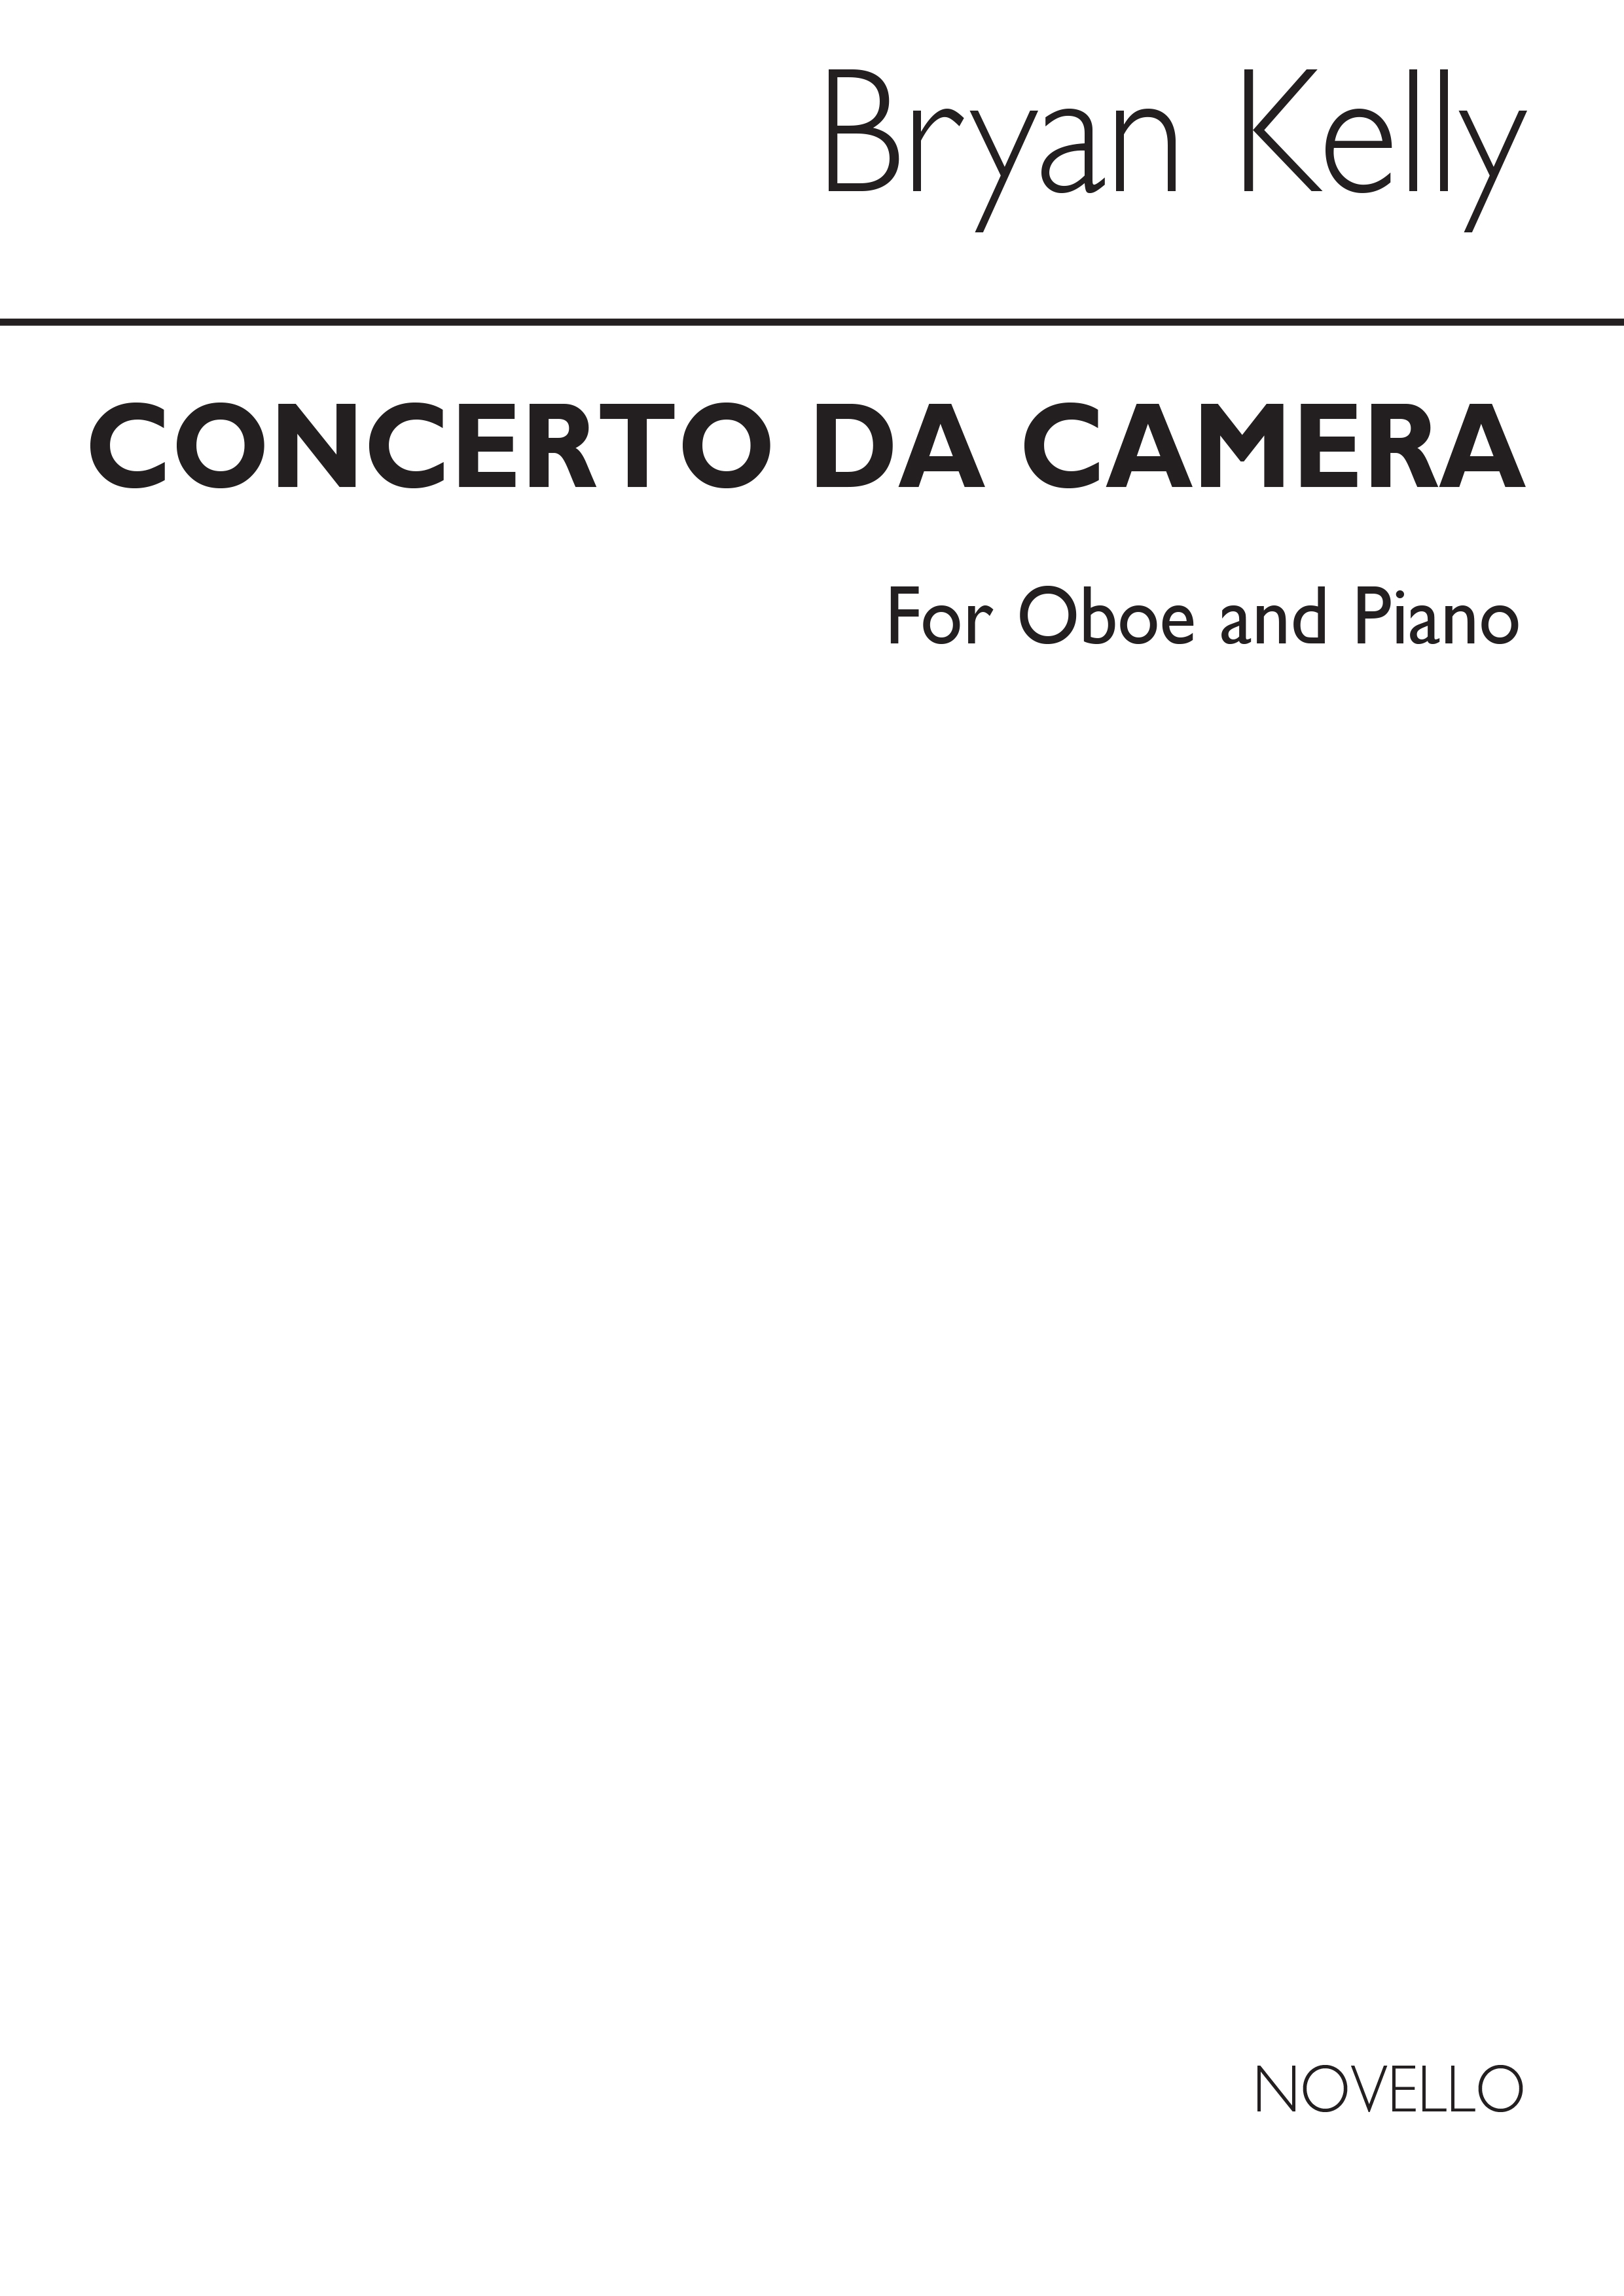 Bryan Kelly: Concerto Da Camera